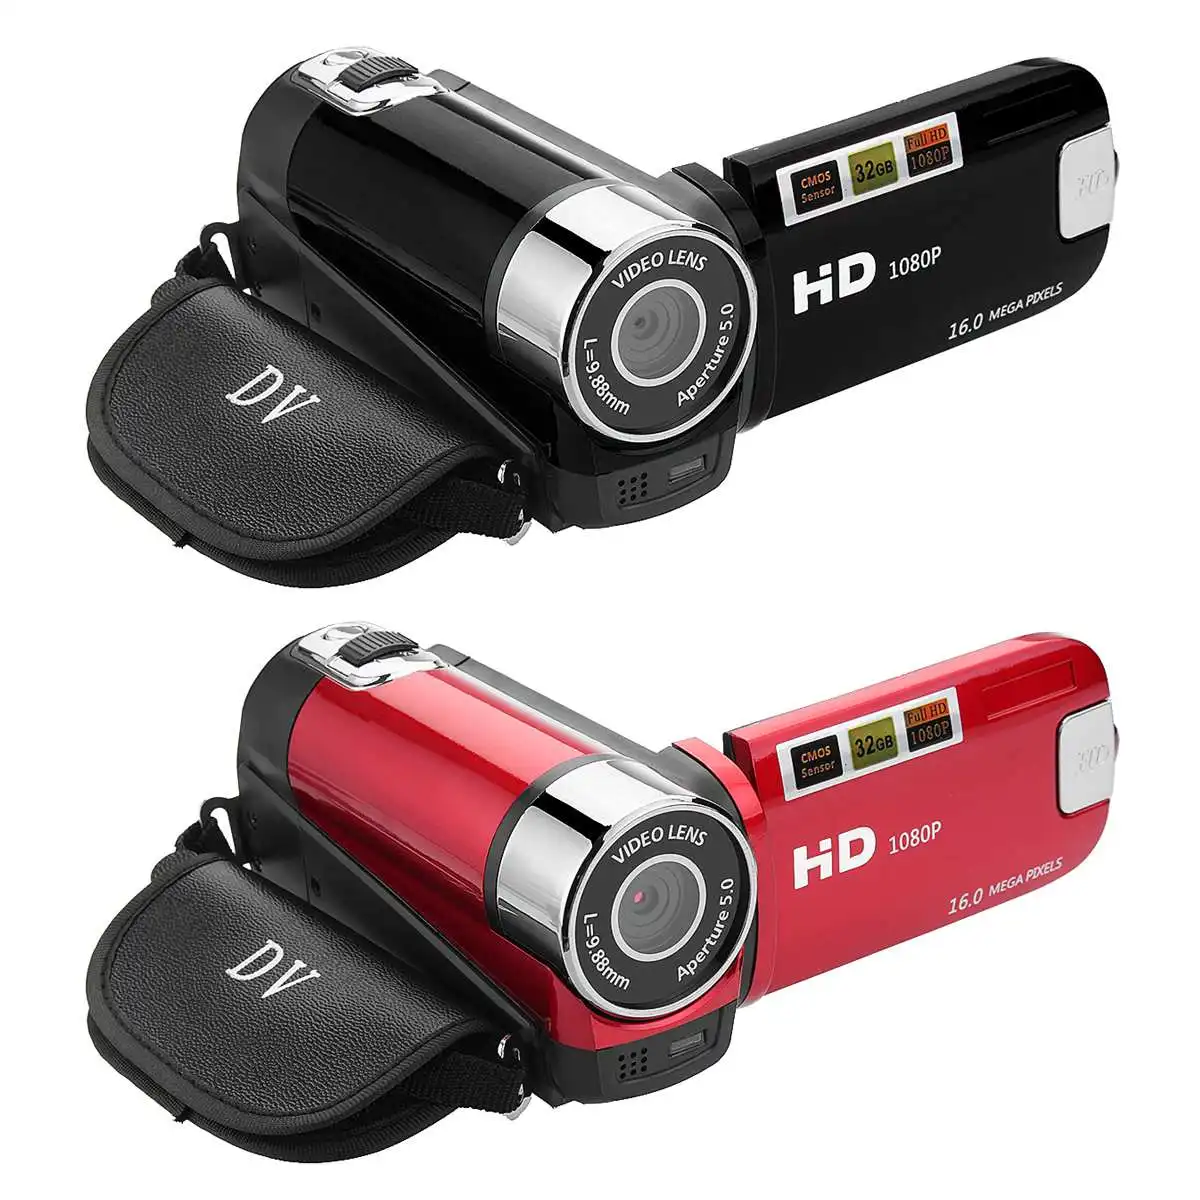 1080P HD Цифровая камера портативная Videocamcoder Videocam DV для домашнего использования дорожная видеокамера вращающийся на 270 градусов экран